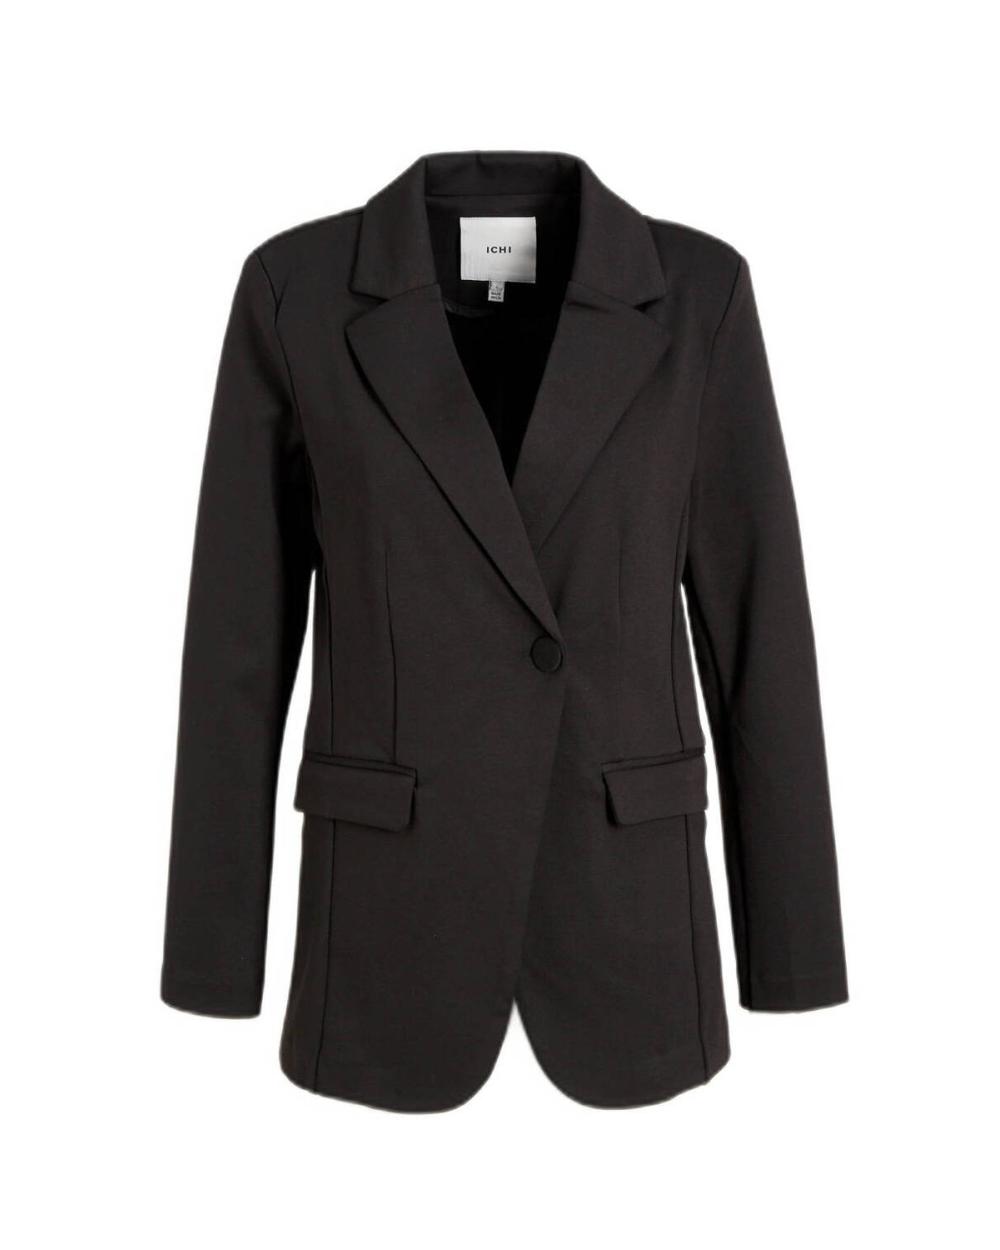 Comparación mostrador Encadenar blazer-elegante-con-botón-negro-ichi-simonse